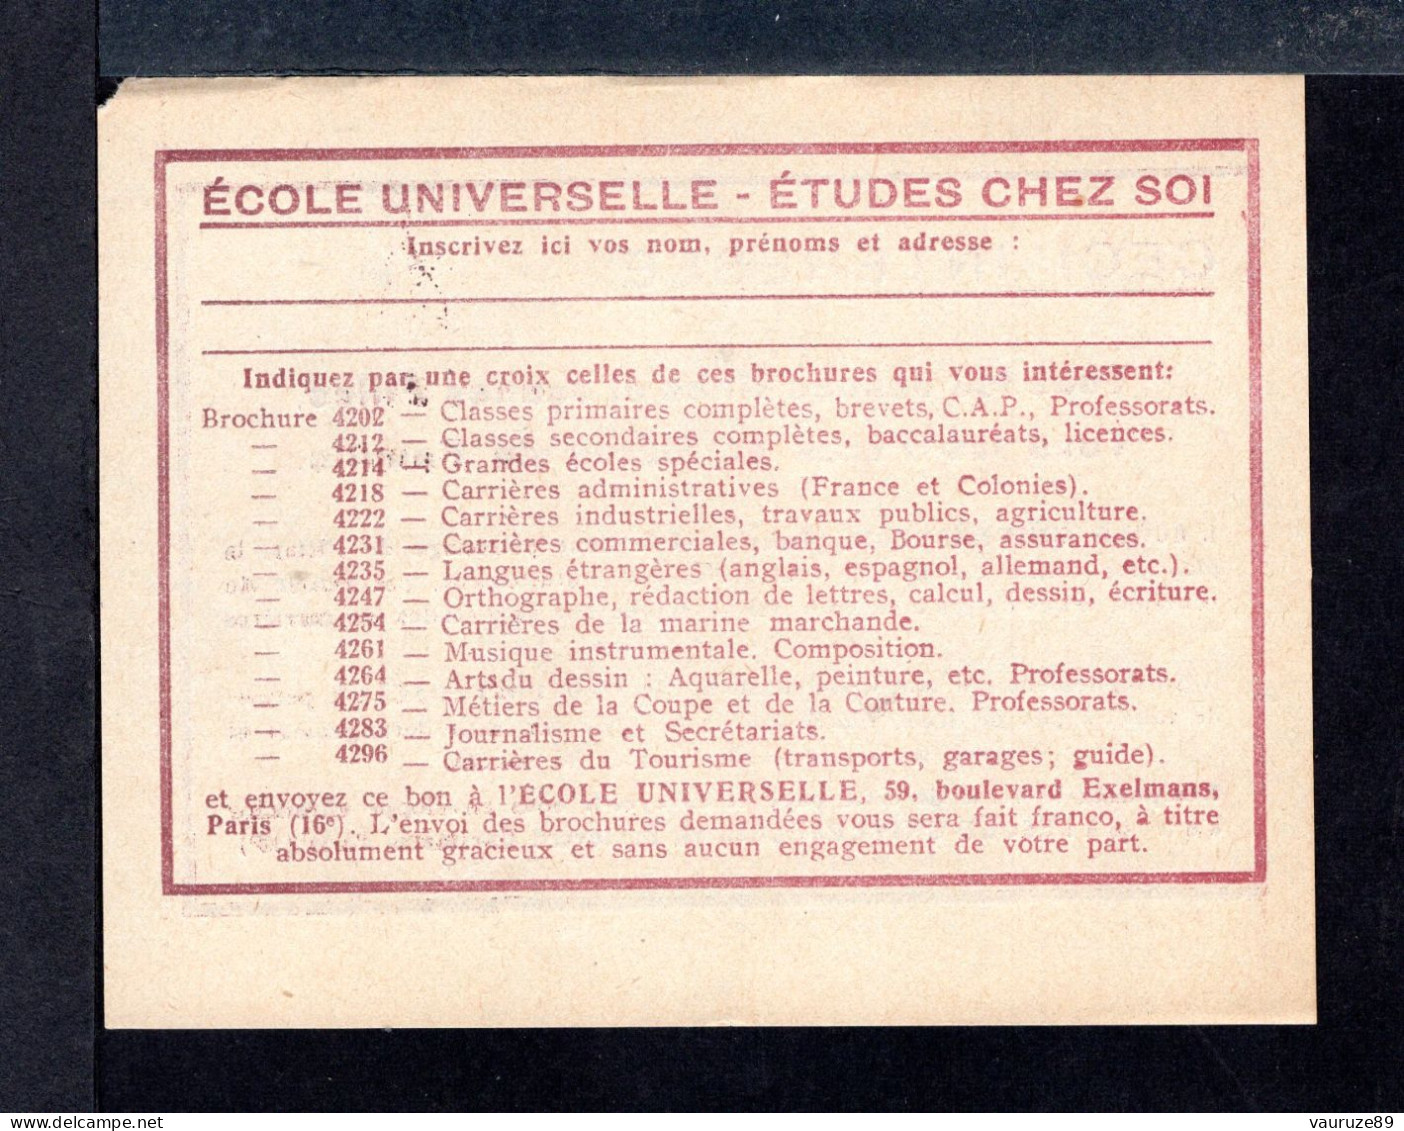 Carnet De 1929  - Tuberculose - Antituberculeux - N° 29-La*SI*couv 2a--PUB PHILA CAP NORD Blédine - Nestlé - Blokken & Postzegelboekjes